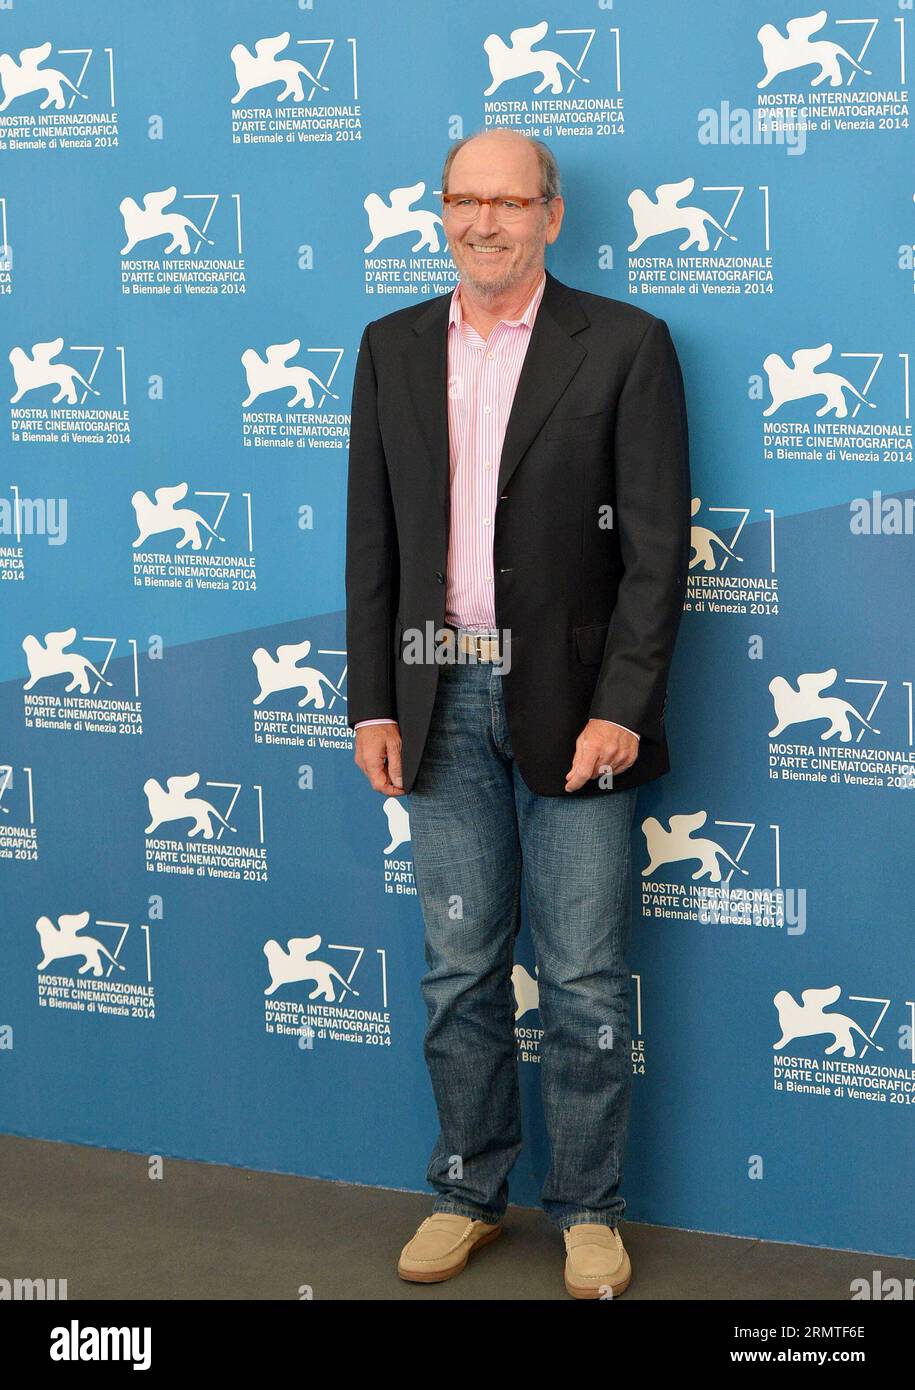 (140901) -- VENEZIA, 1 settembre 2014 -- l'attore Richard Jenkins posa durante il Photo call per Olive Kitteridge, selezionato per la proiezione durante la 71a Mostra del Cinema di Venezia, a Lido di Venezia, il 1° settembre 2014. ) (Dzl) ITALY-VENICE-FILM FESTIVAL-PHOTO CALL-OLIVE KITTERIDGE LiuxLihang PUBLICATIONxNOTxINxCHN Venezia 1 settembre 2014 l'attore Richard Jenkins posa durante il Photo Call for Olive Kitteridge selezionato per la proiezione durante la 71a Mostra del Cinema di Venezia a Lido di Venezia Italia IL 1 settembre 2014 dzl Italy Venice Film Festival Photo Call Olive Kitteridge PUBLICATIONxNOTxINxCHN Foto Stock